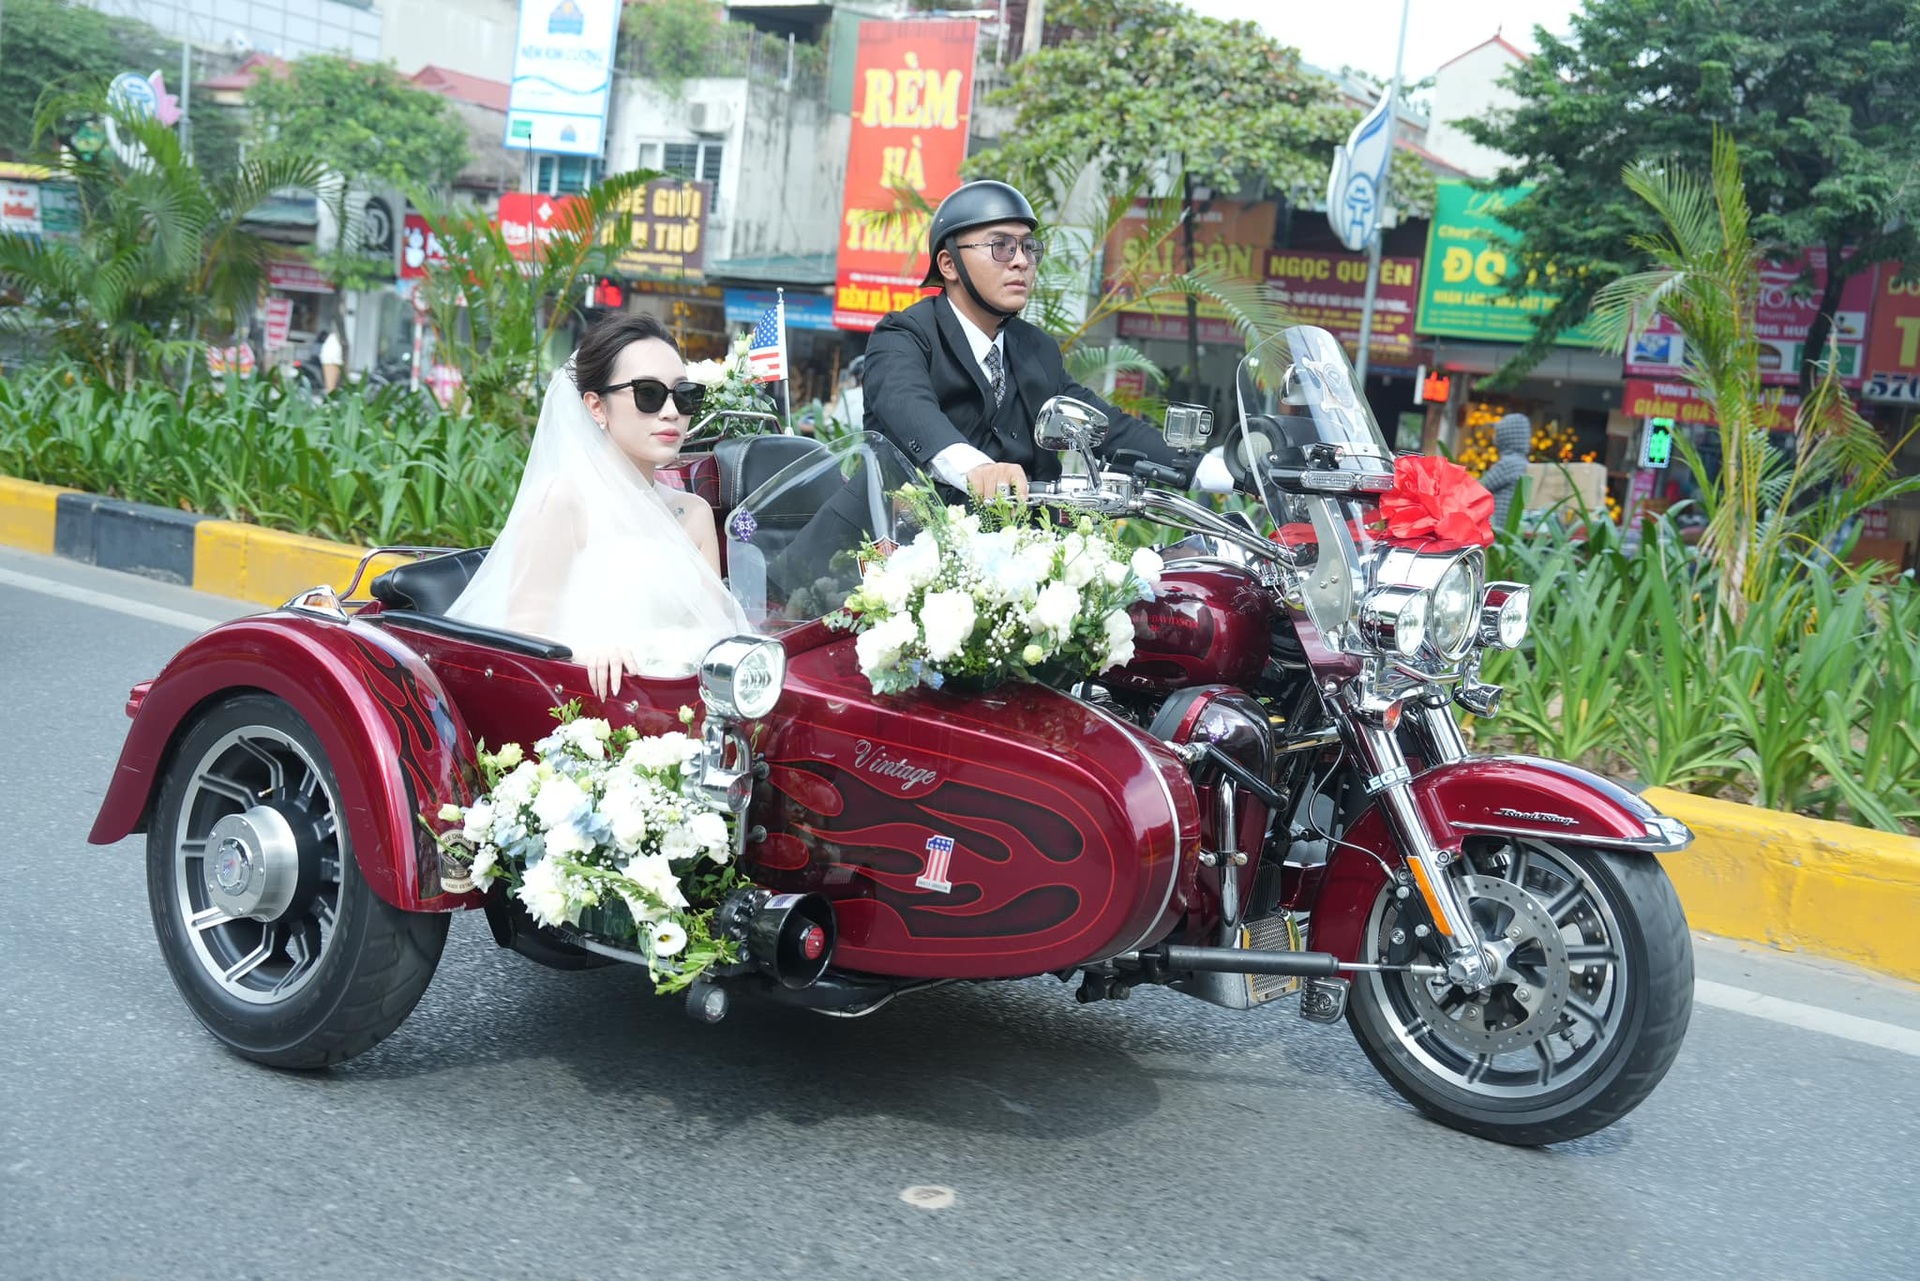 Bách đón cô dâu Phương Dung về trên chiếc xe mô tô có giá hơn 1 tỷ đồng